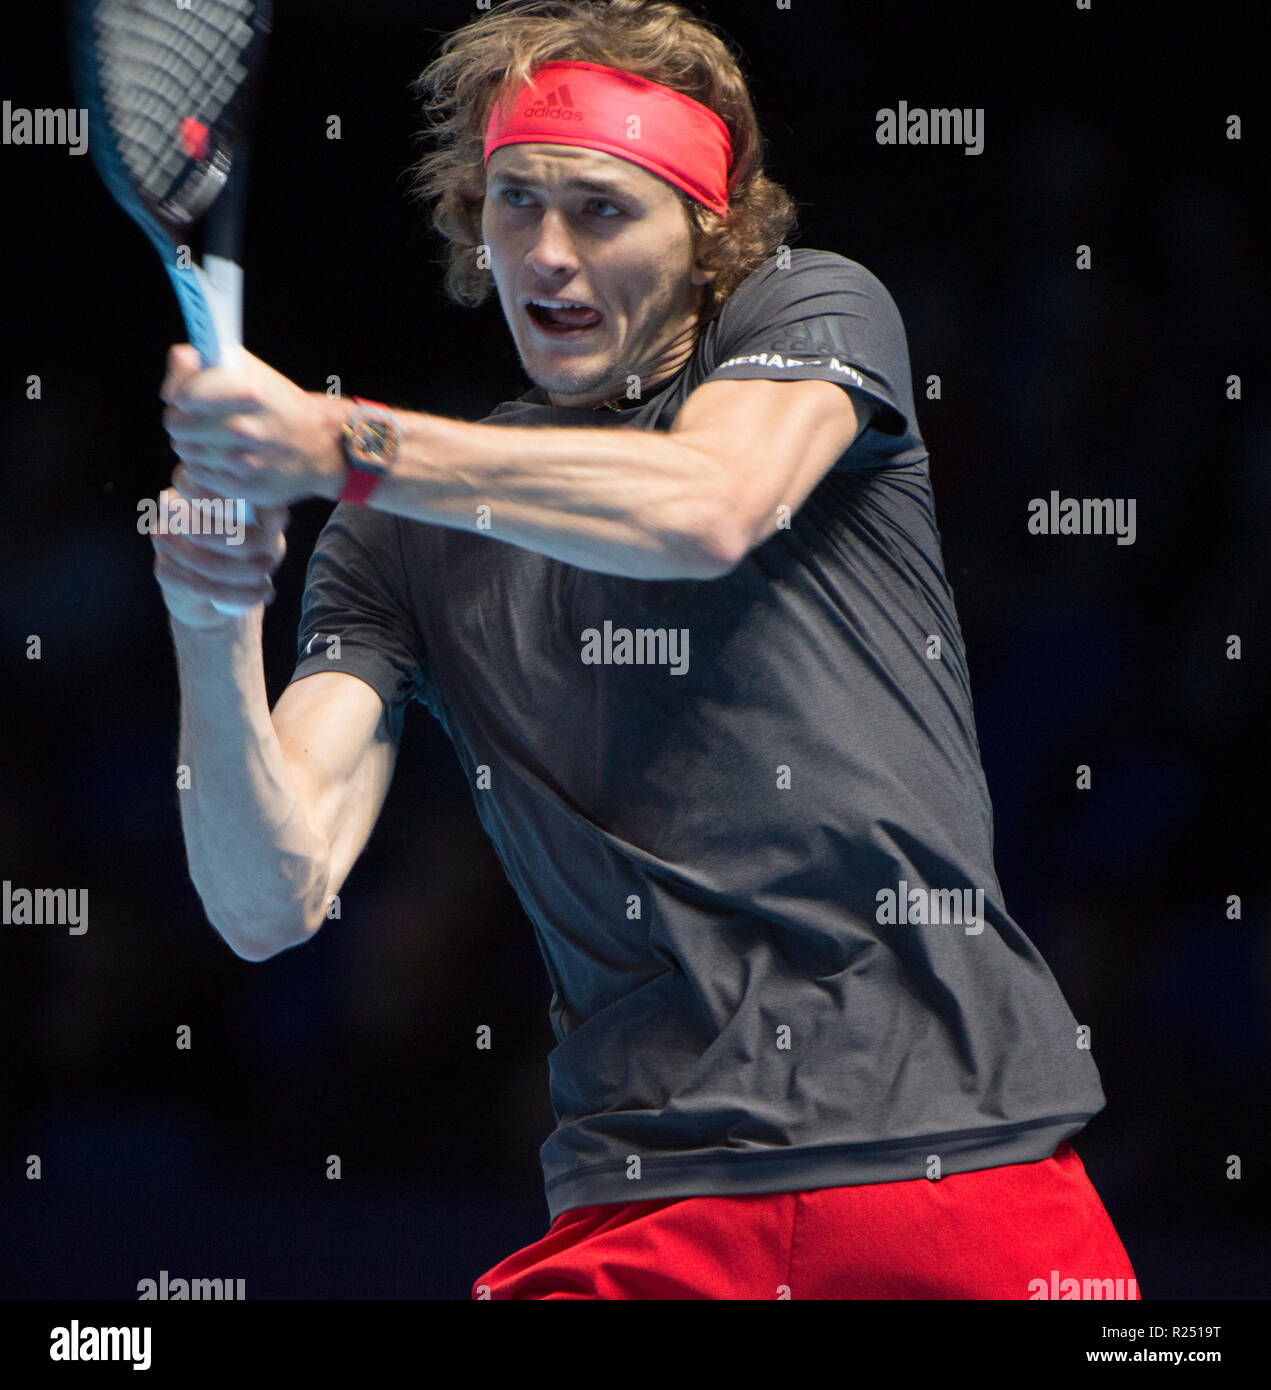 O2, Londres, Royaume-Uni. 16 novembre, 2018. Sixième Journée des tournois à l'O2 Arena de Londres, Alexander Zverev (GER) 7-6 (7-5) 6-3 victoire sur John Isner (USA). Zverev jouera Federer en demi-finale. Credit : Malcolm Park/Alamy Live News. Banque D'Images